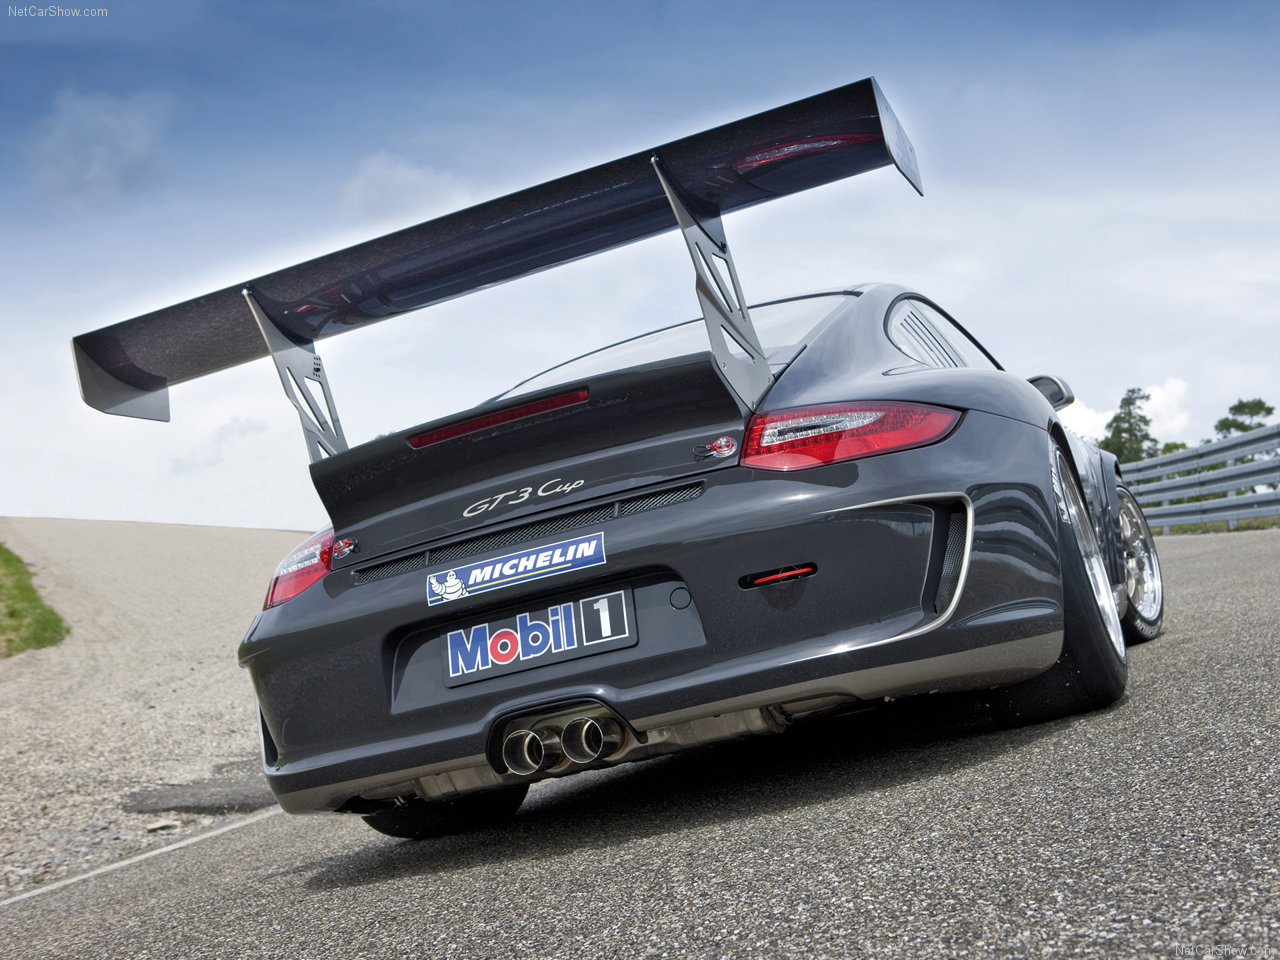 Porsche - Populaire francais d'automobiles: 2010 Porsche 911 GT3 Cup